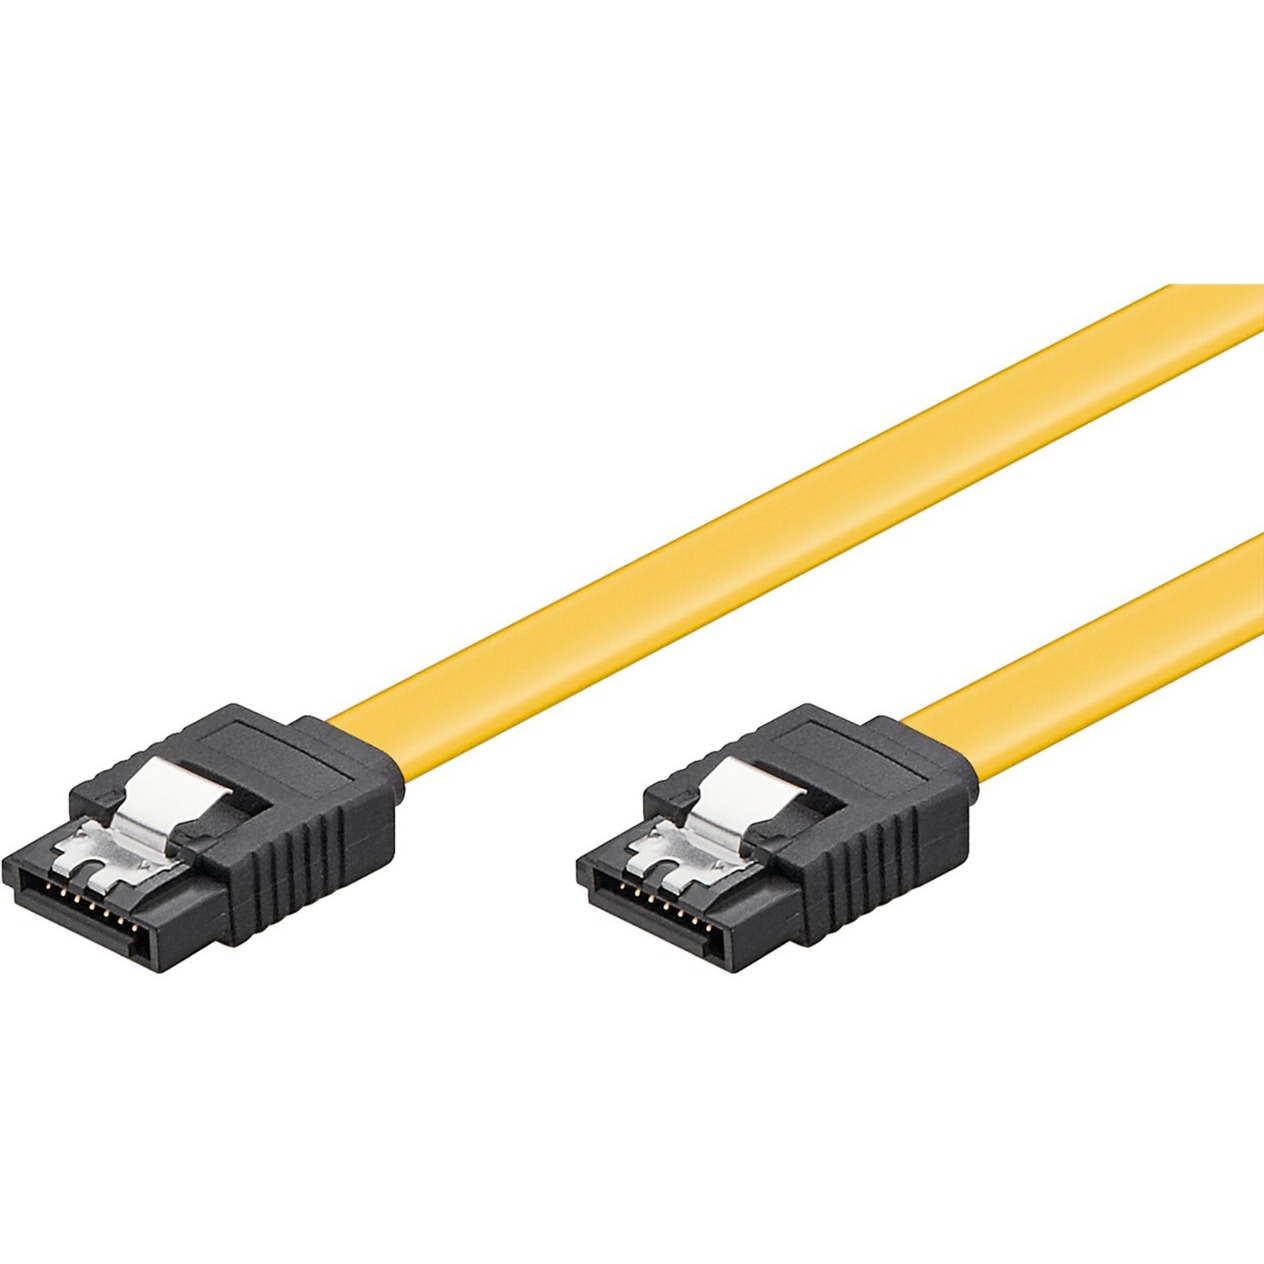 Image of Alternate - SATA Kabel online einkaufen bei Alternate